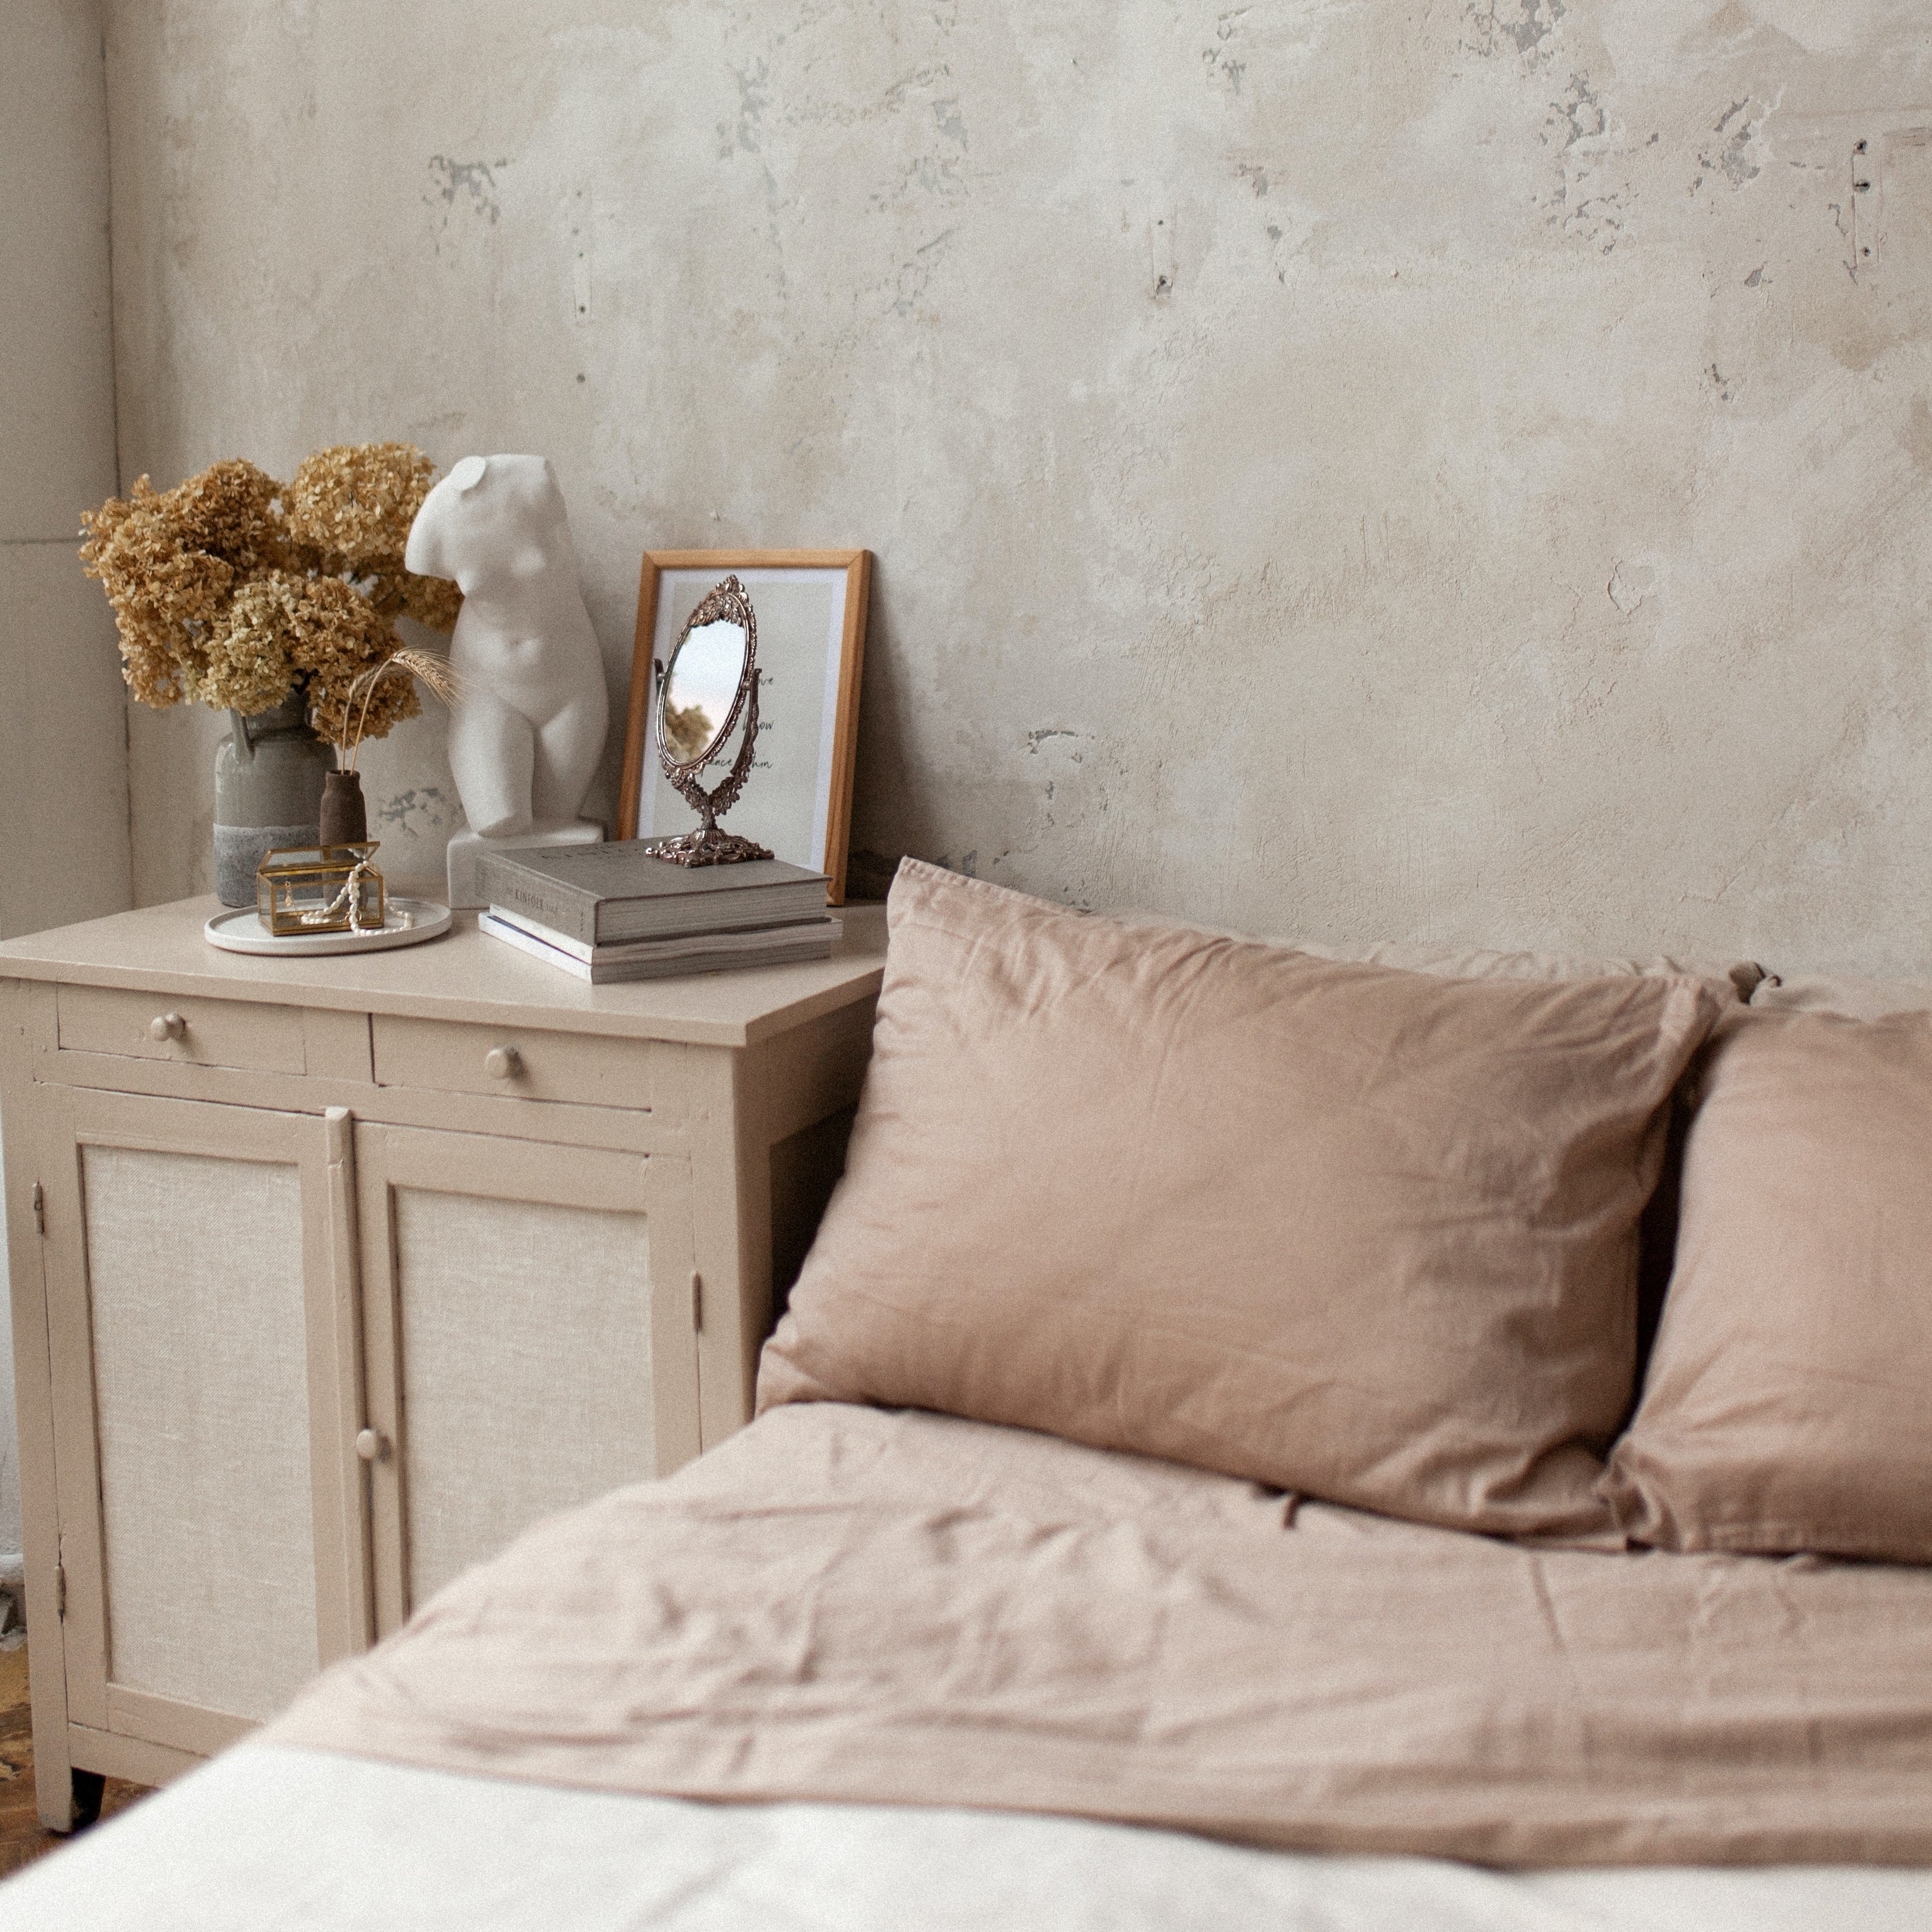 Schlafzimmer romantisch gestalten: Ideen für eine romantische Atmosphäre